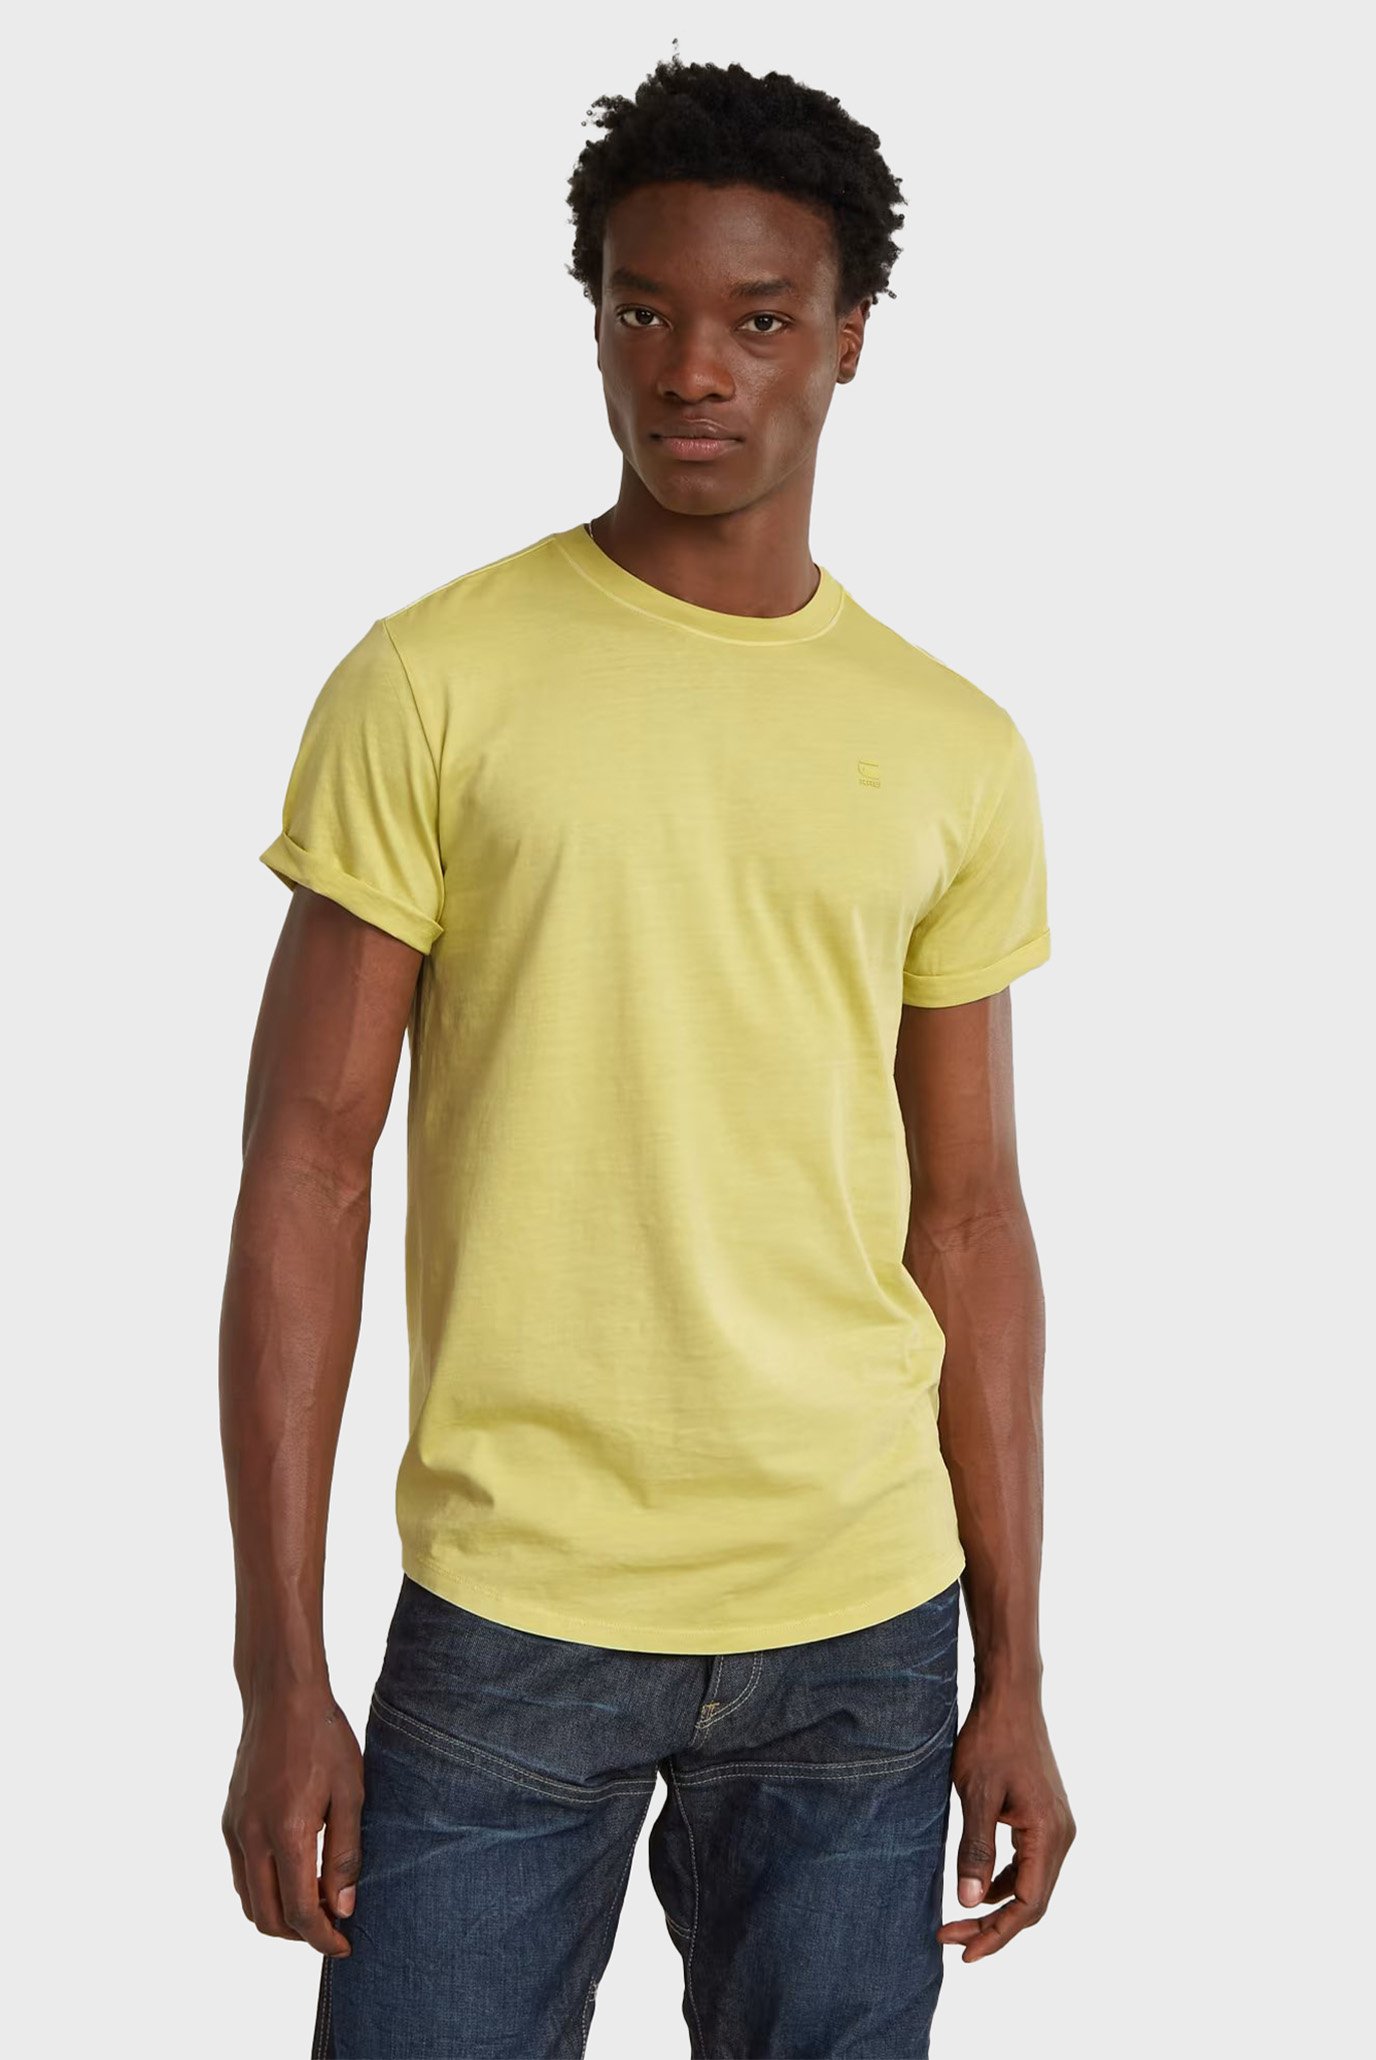 Мужская желтая футболка Lash r t s/s 1